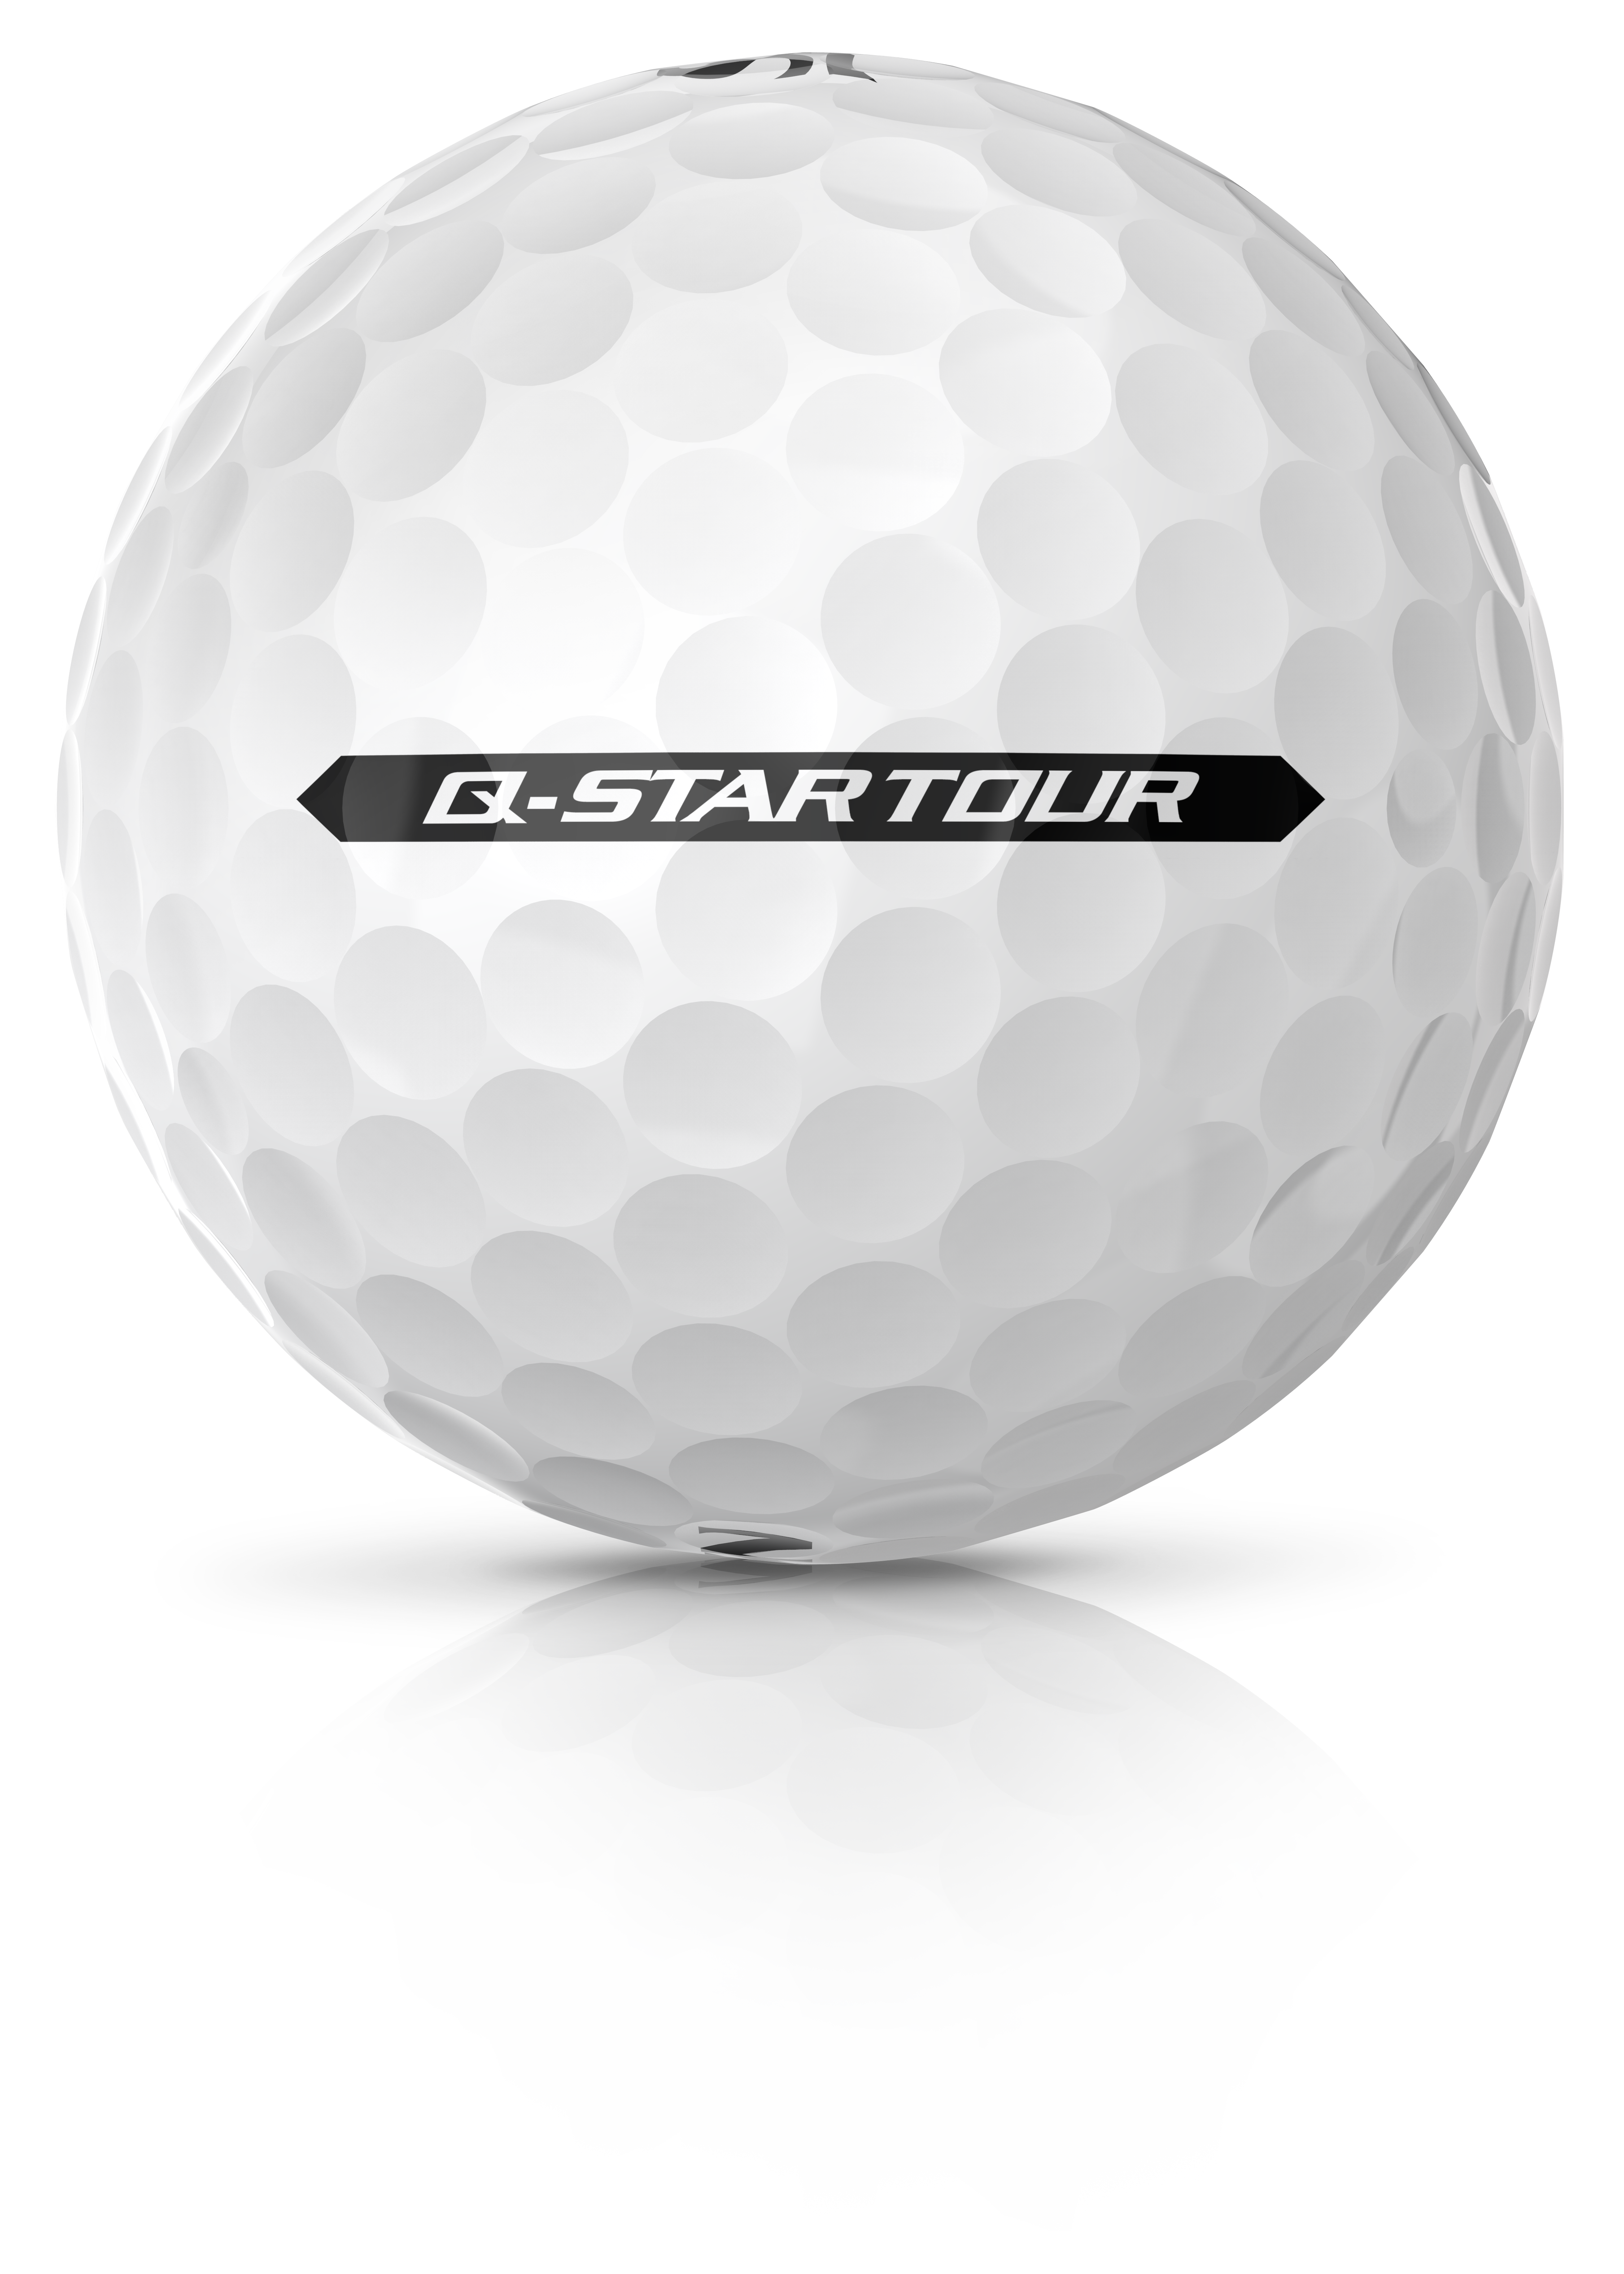 Srixon Q-STAR TOUR golf ball - FIRST LOOK